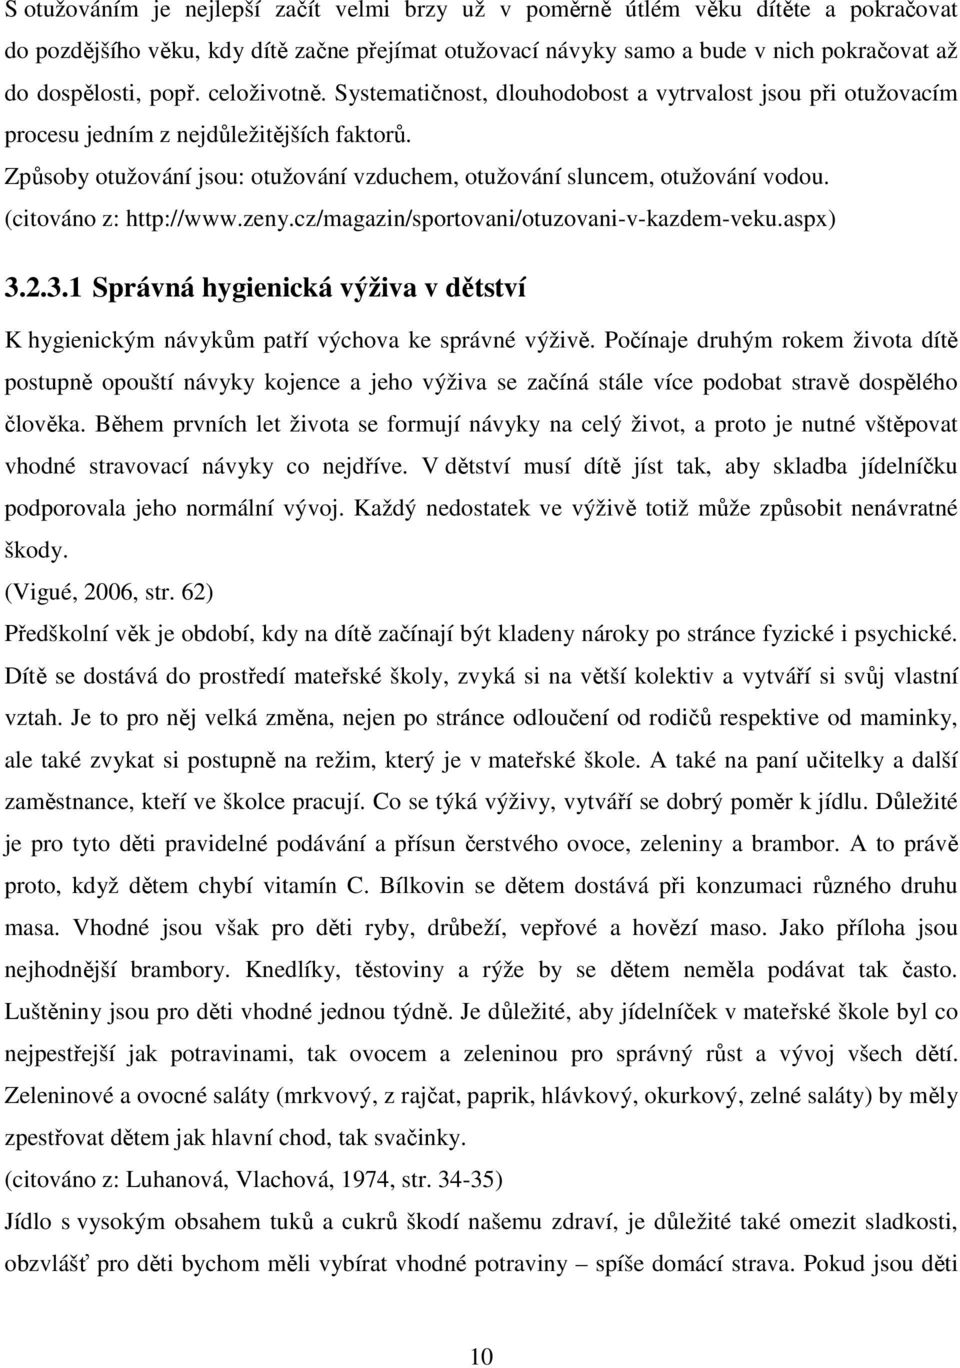 (citováno z: http://www.zeny.cz/magazin/sportovani/otuzovani-v-kazdem-veku.aspx) 3.2.3.1 Správná hygienická výživa v dětství K hygienickým návykům patří výchova ke správné výživě.